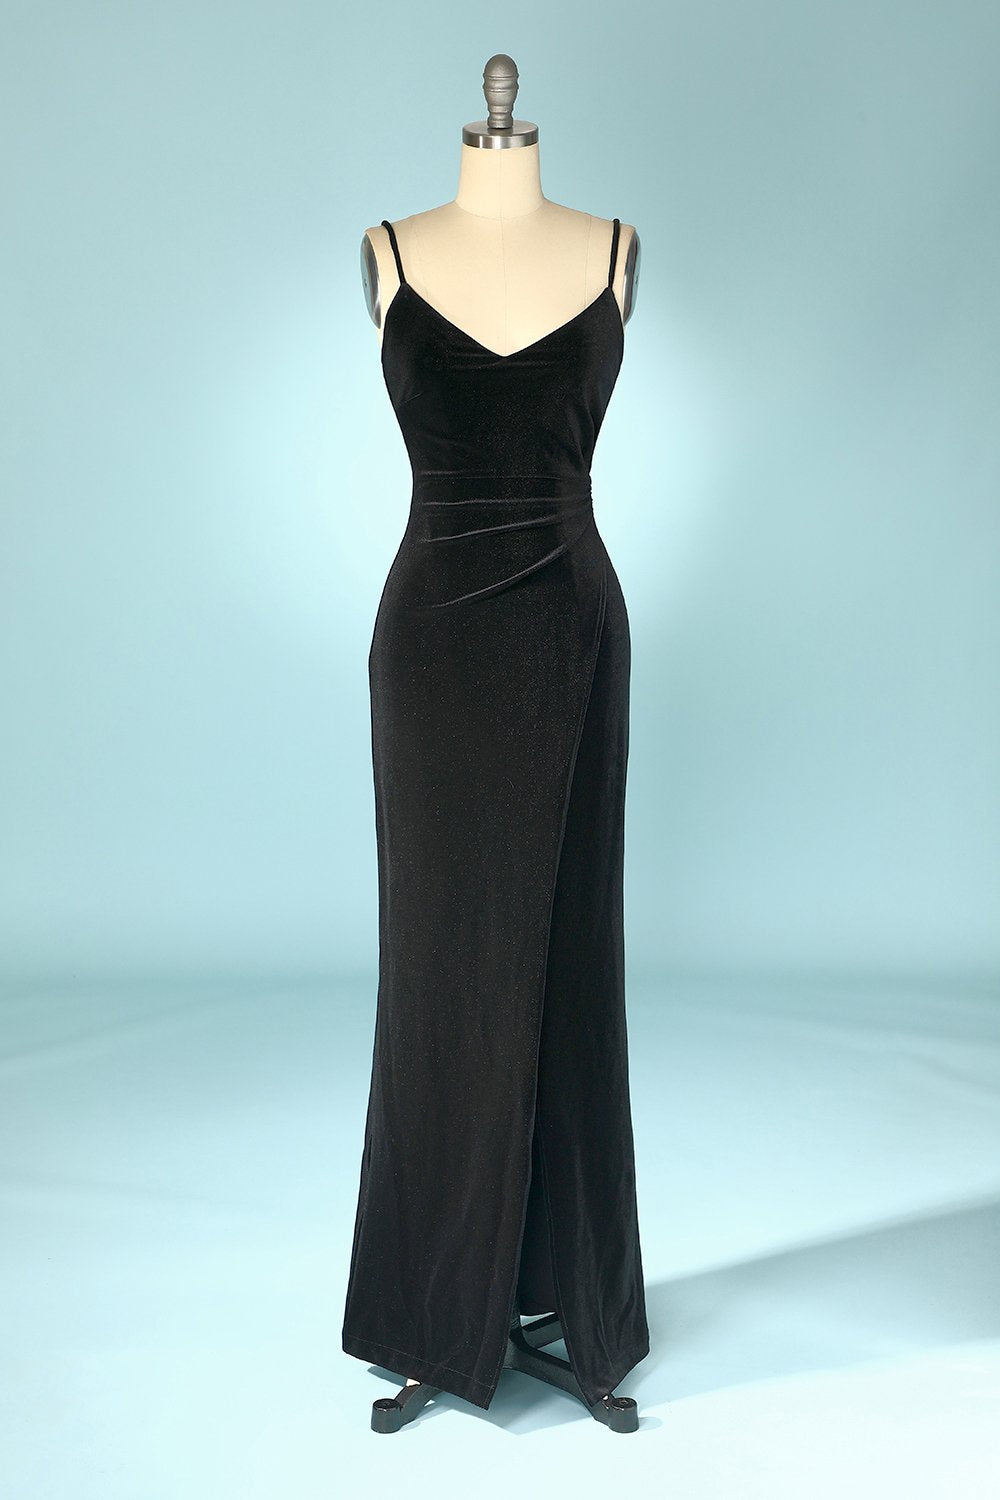 Black Velvet Body-Fitting Evening Party Dress